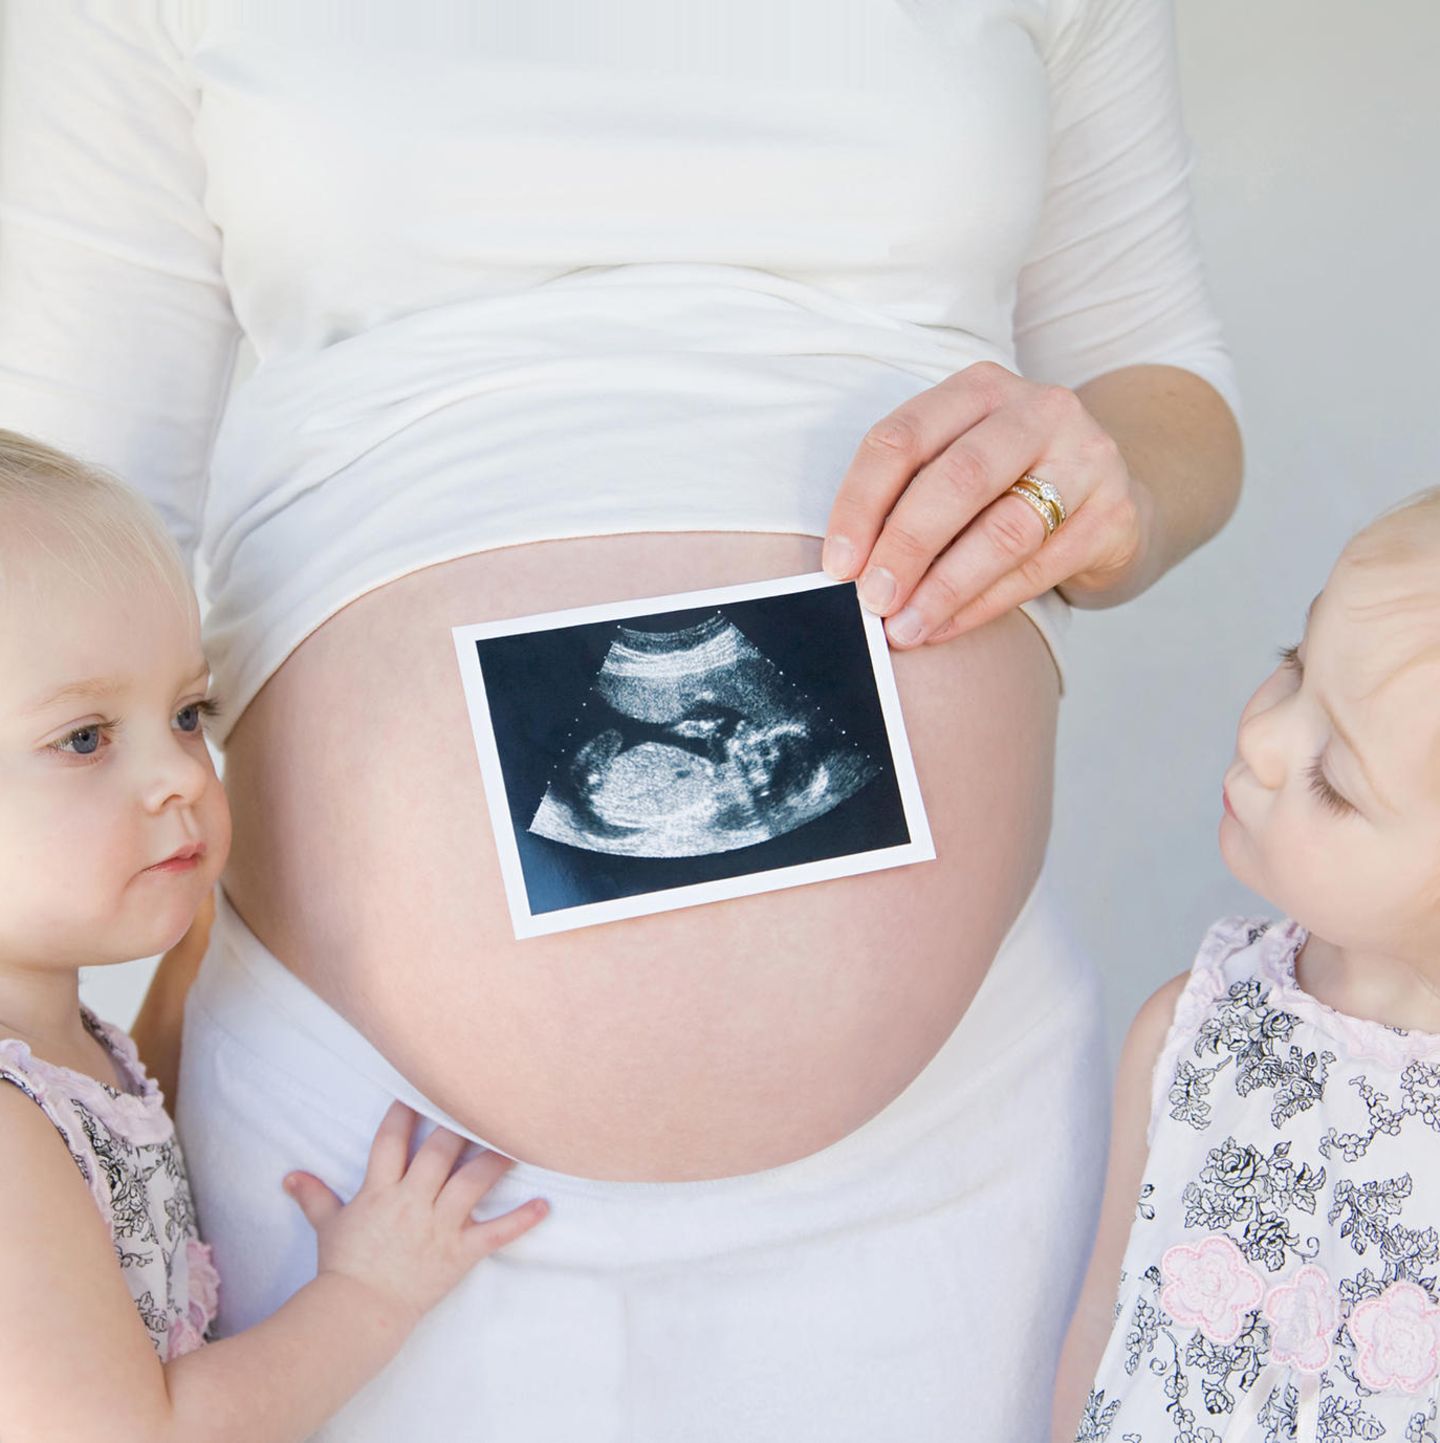 Geschwisterkinder stehen neben Babybauch und schauen darauf gehaltenes Ultraschallbild an.